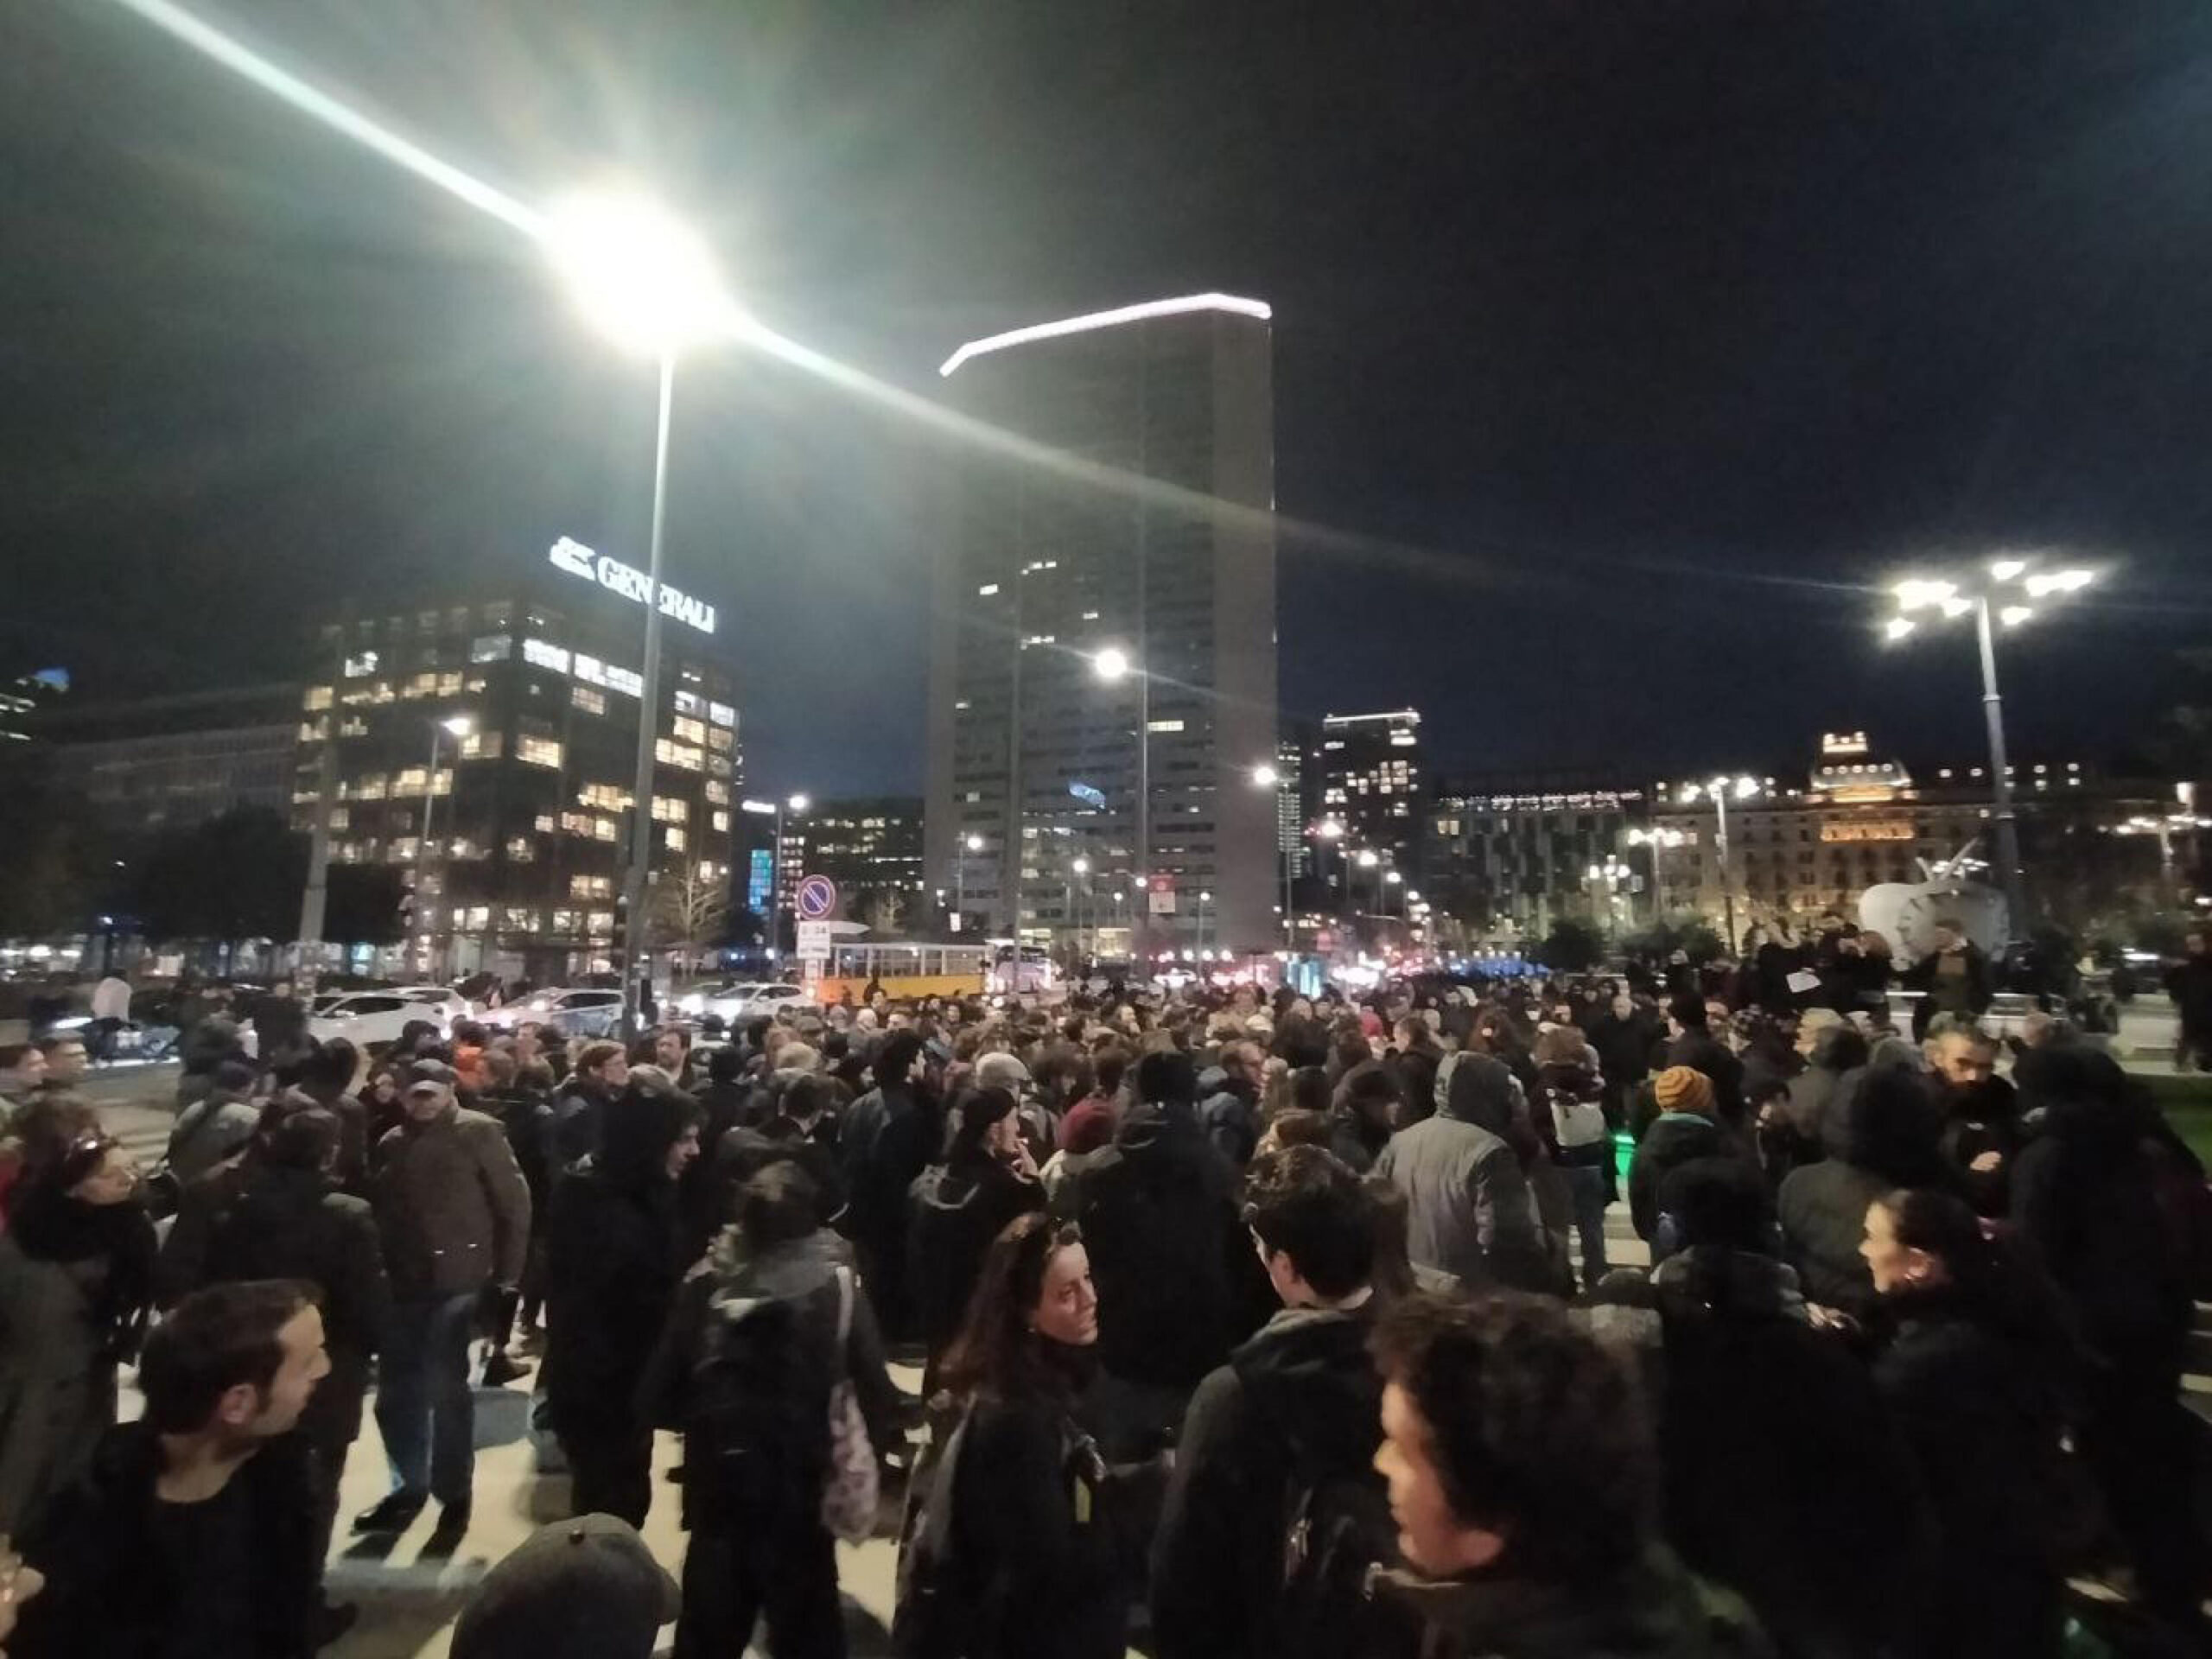 Milano, il presidio anarchico diventa corteo non autorizzato. Slogan per Cospito, ferito un cameraman – Il video